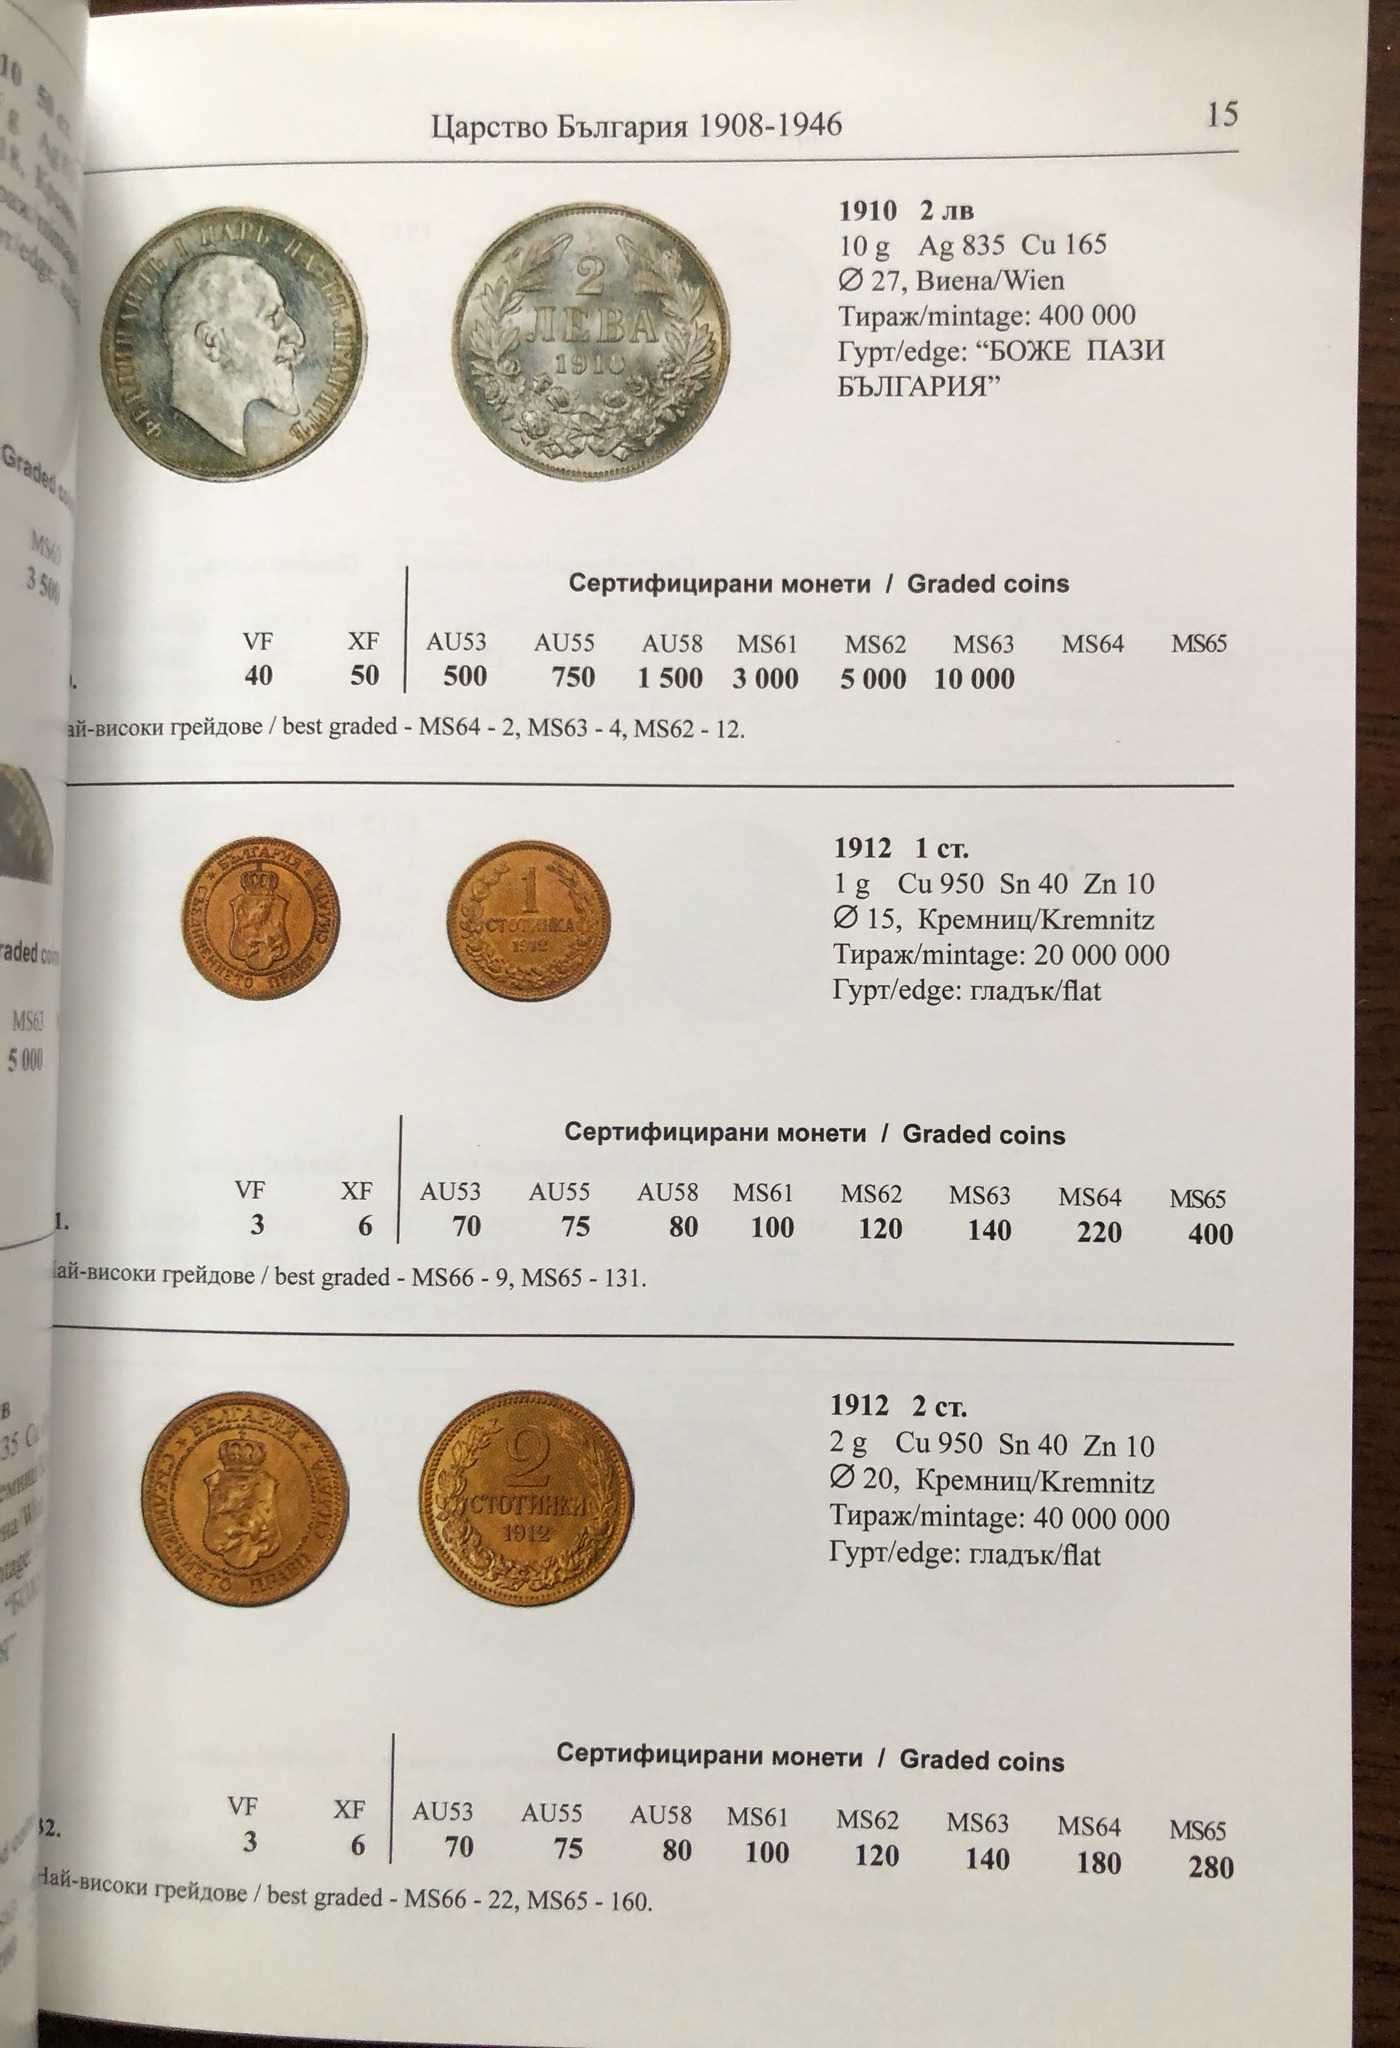 Каталог на българските монети 2024 г.